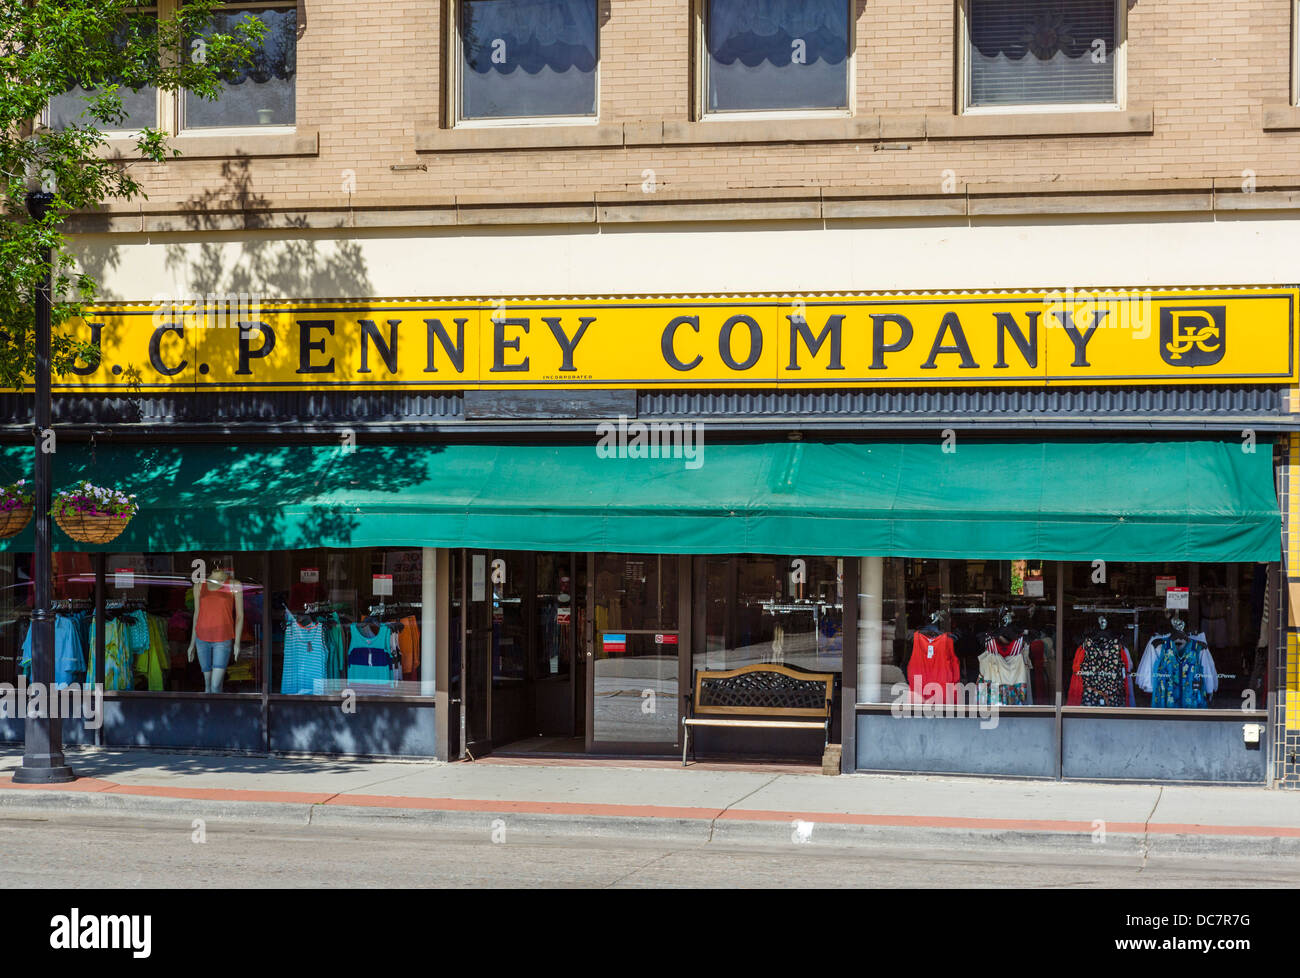 J Historique C Penney storefront au centre-ville de Sheridan, Wyoming, USA Banque D'Images